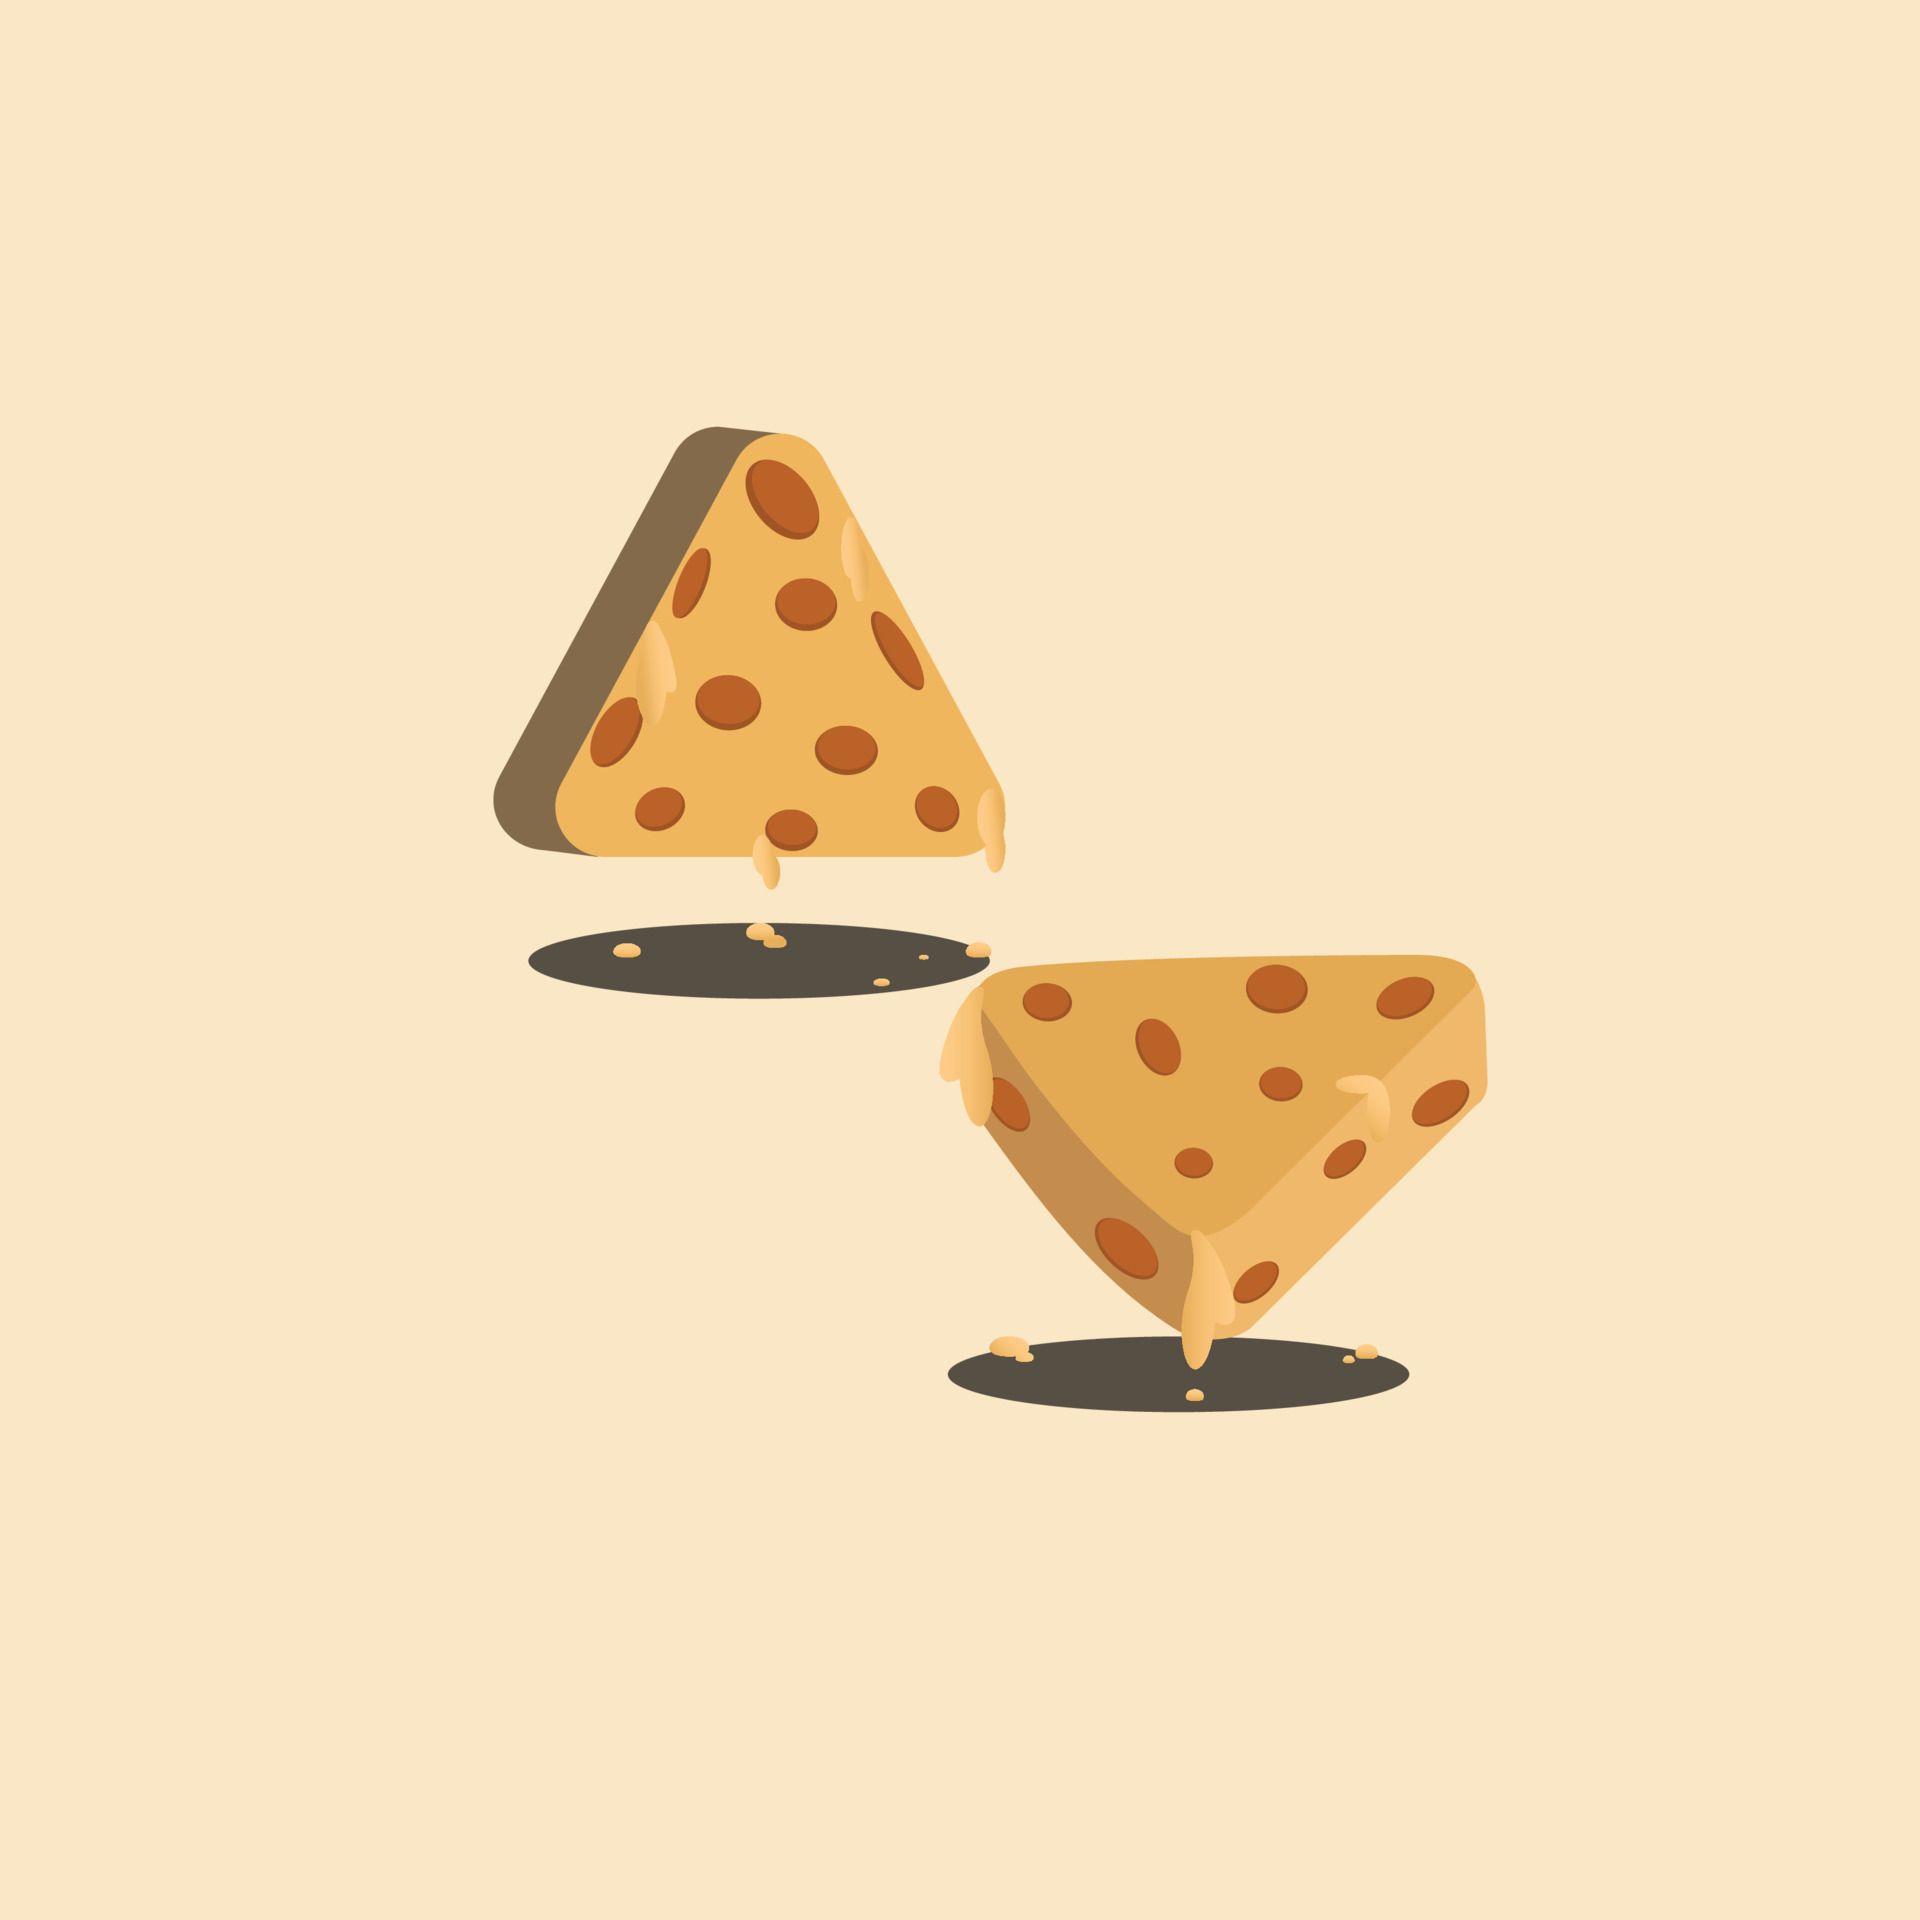 Cartoon cheese, isolated, illustration